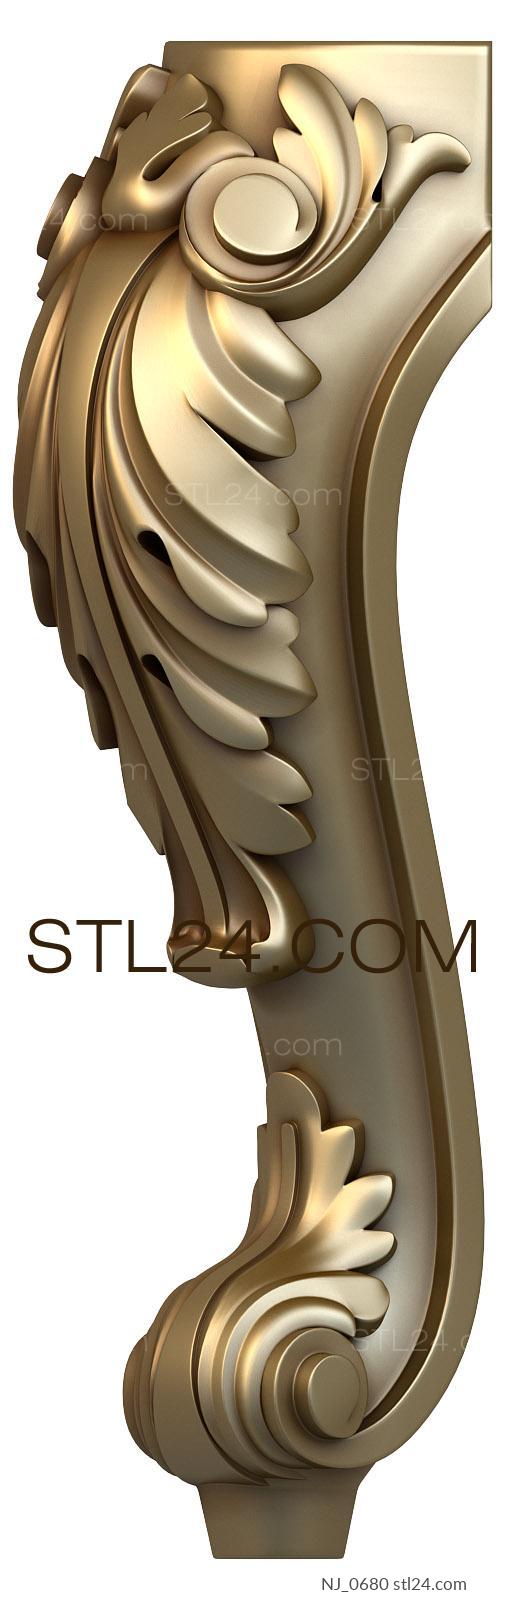 Ножки (NJ_0680) 3D модель для ЧПУ станка